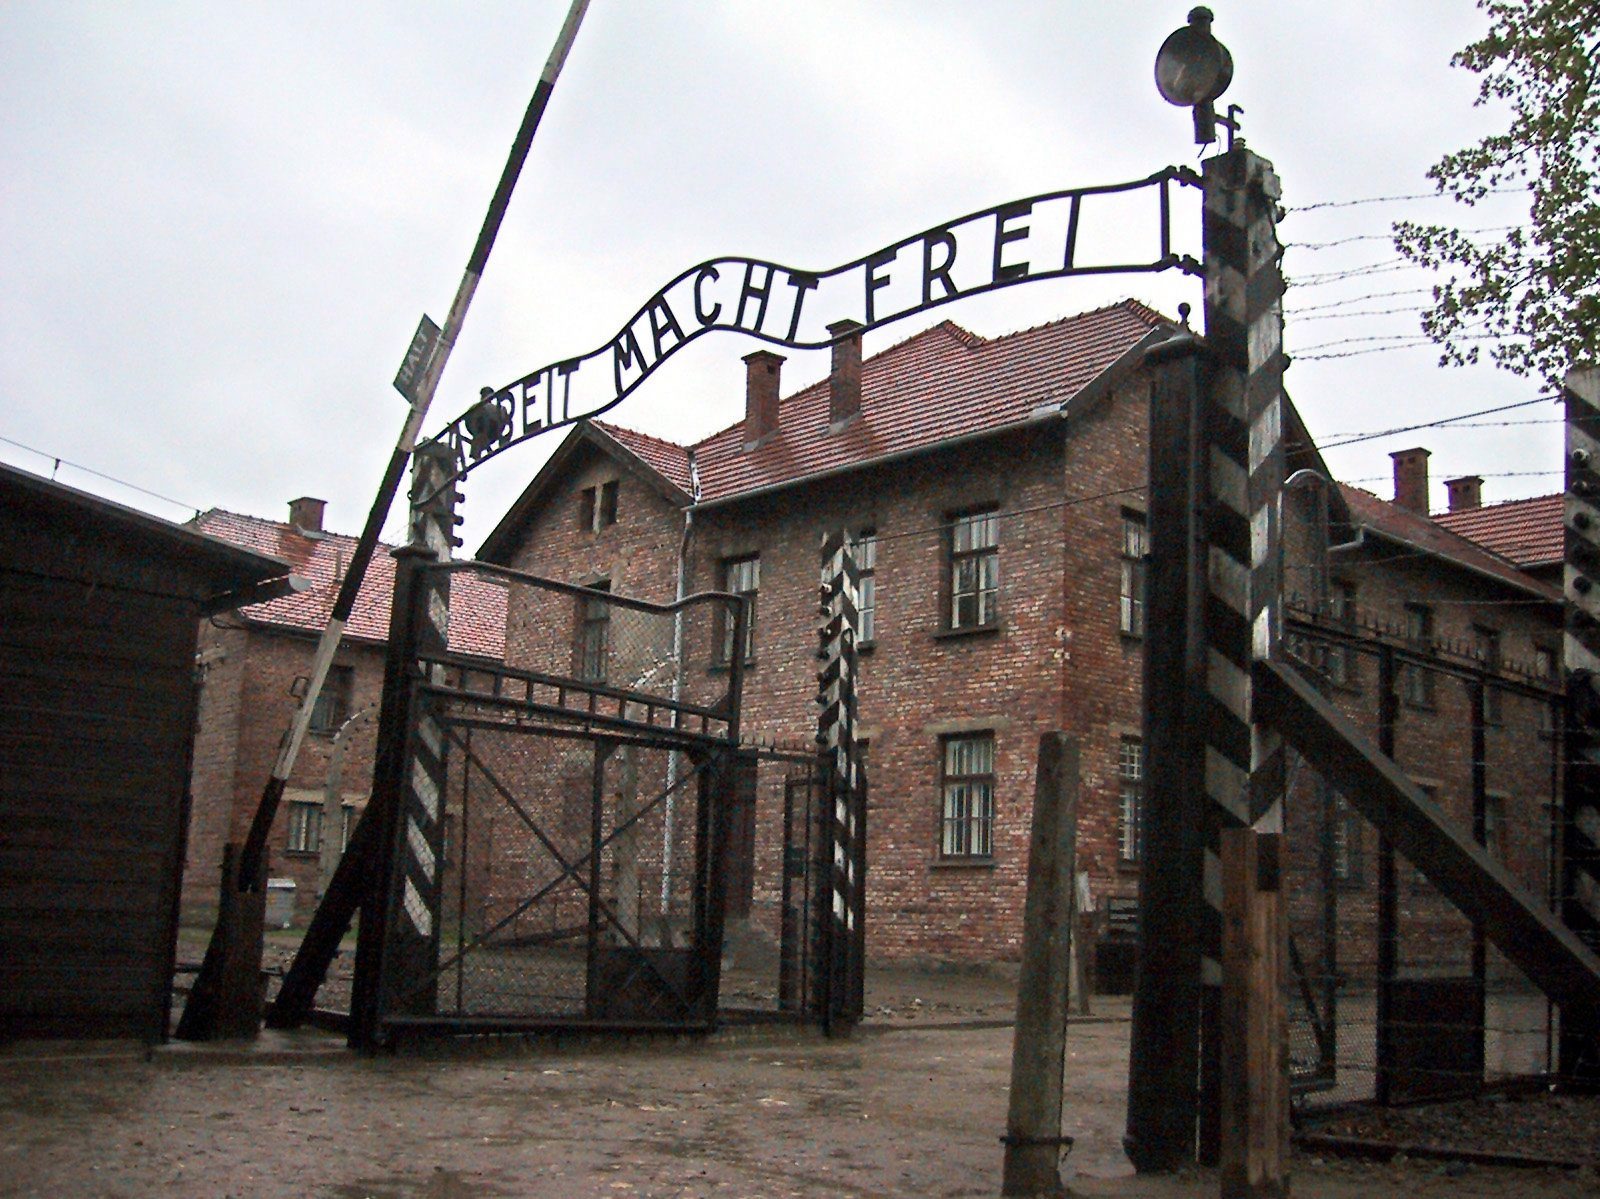 Morreu Oskar Gröning, o &#8220;contabilista de Auschwitz&#8221;, segundo os &#8216;media&#8217; alemães